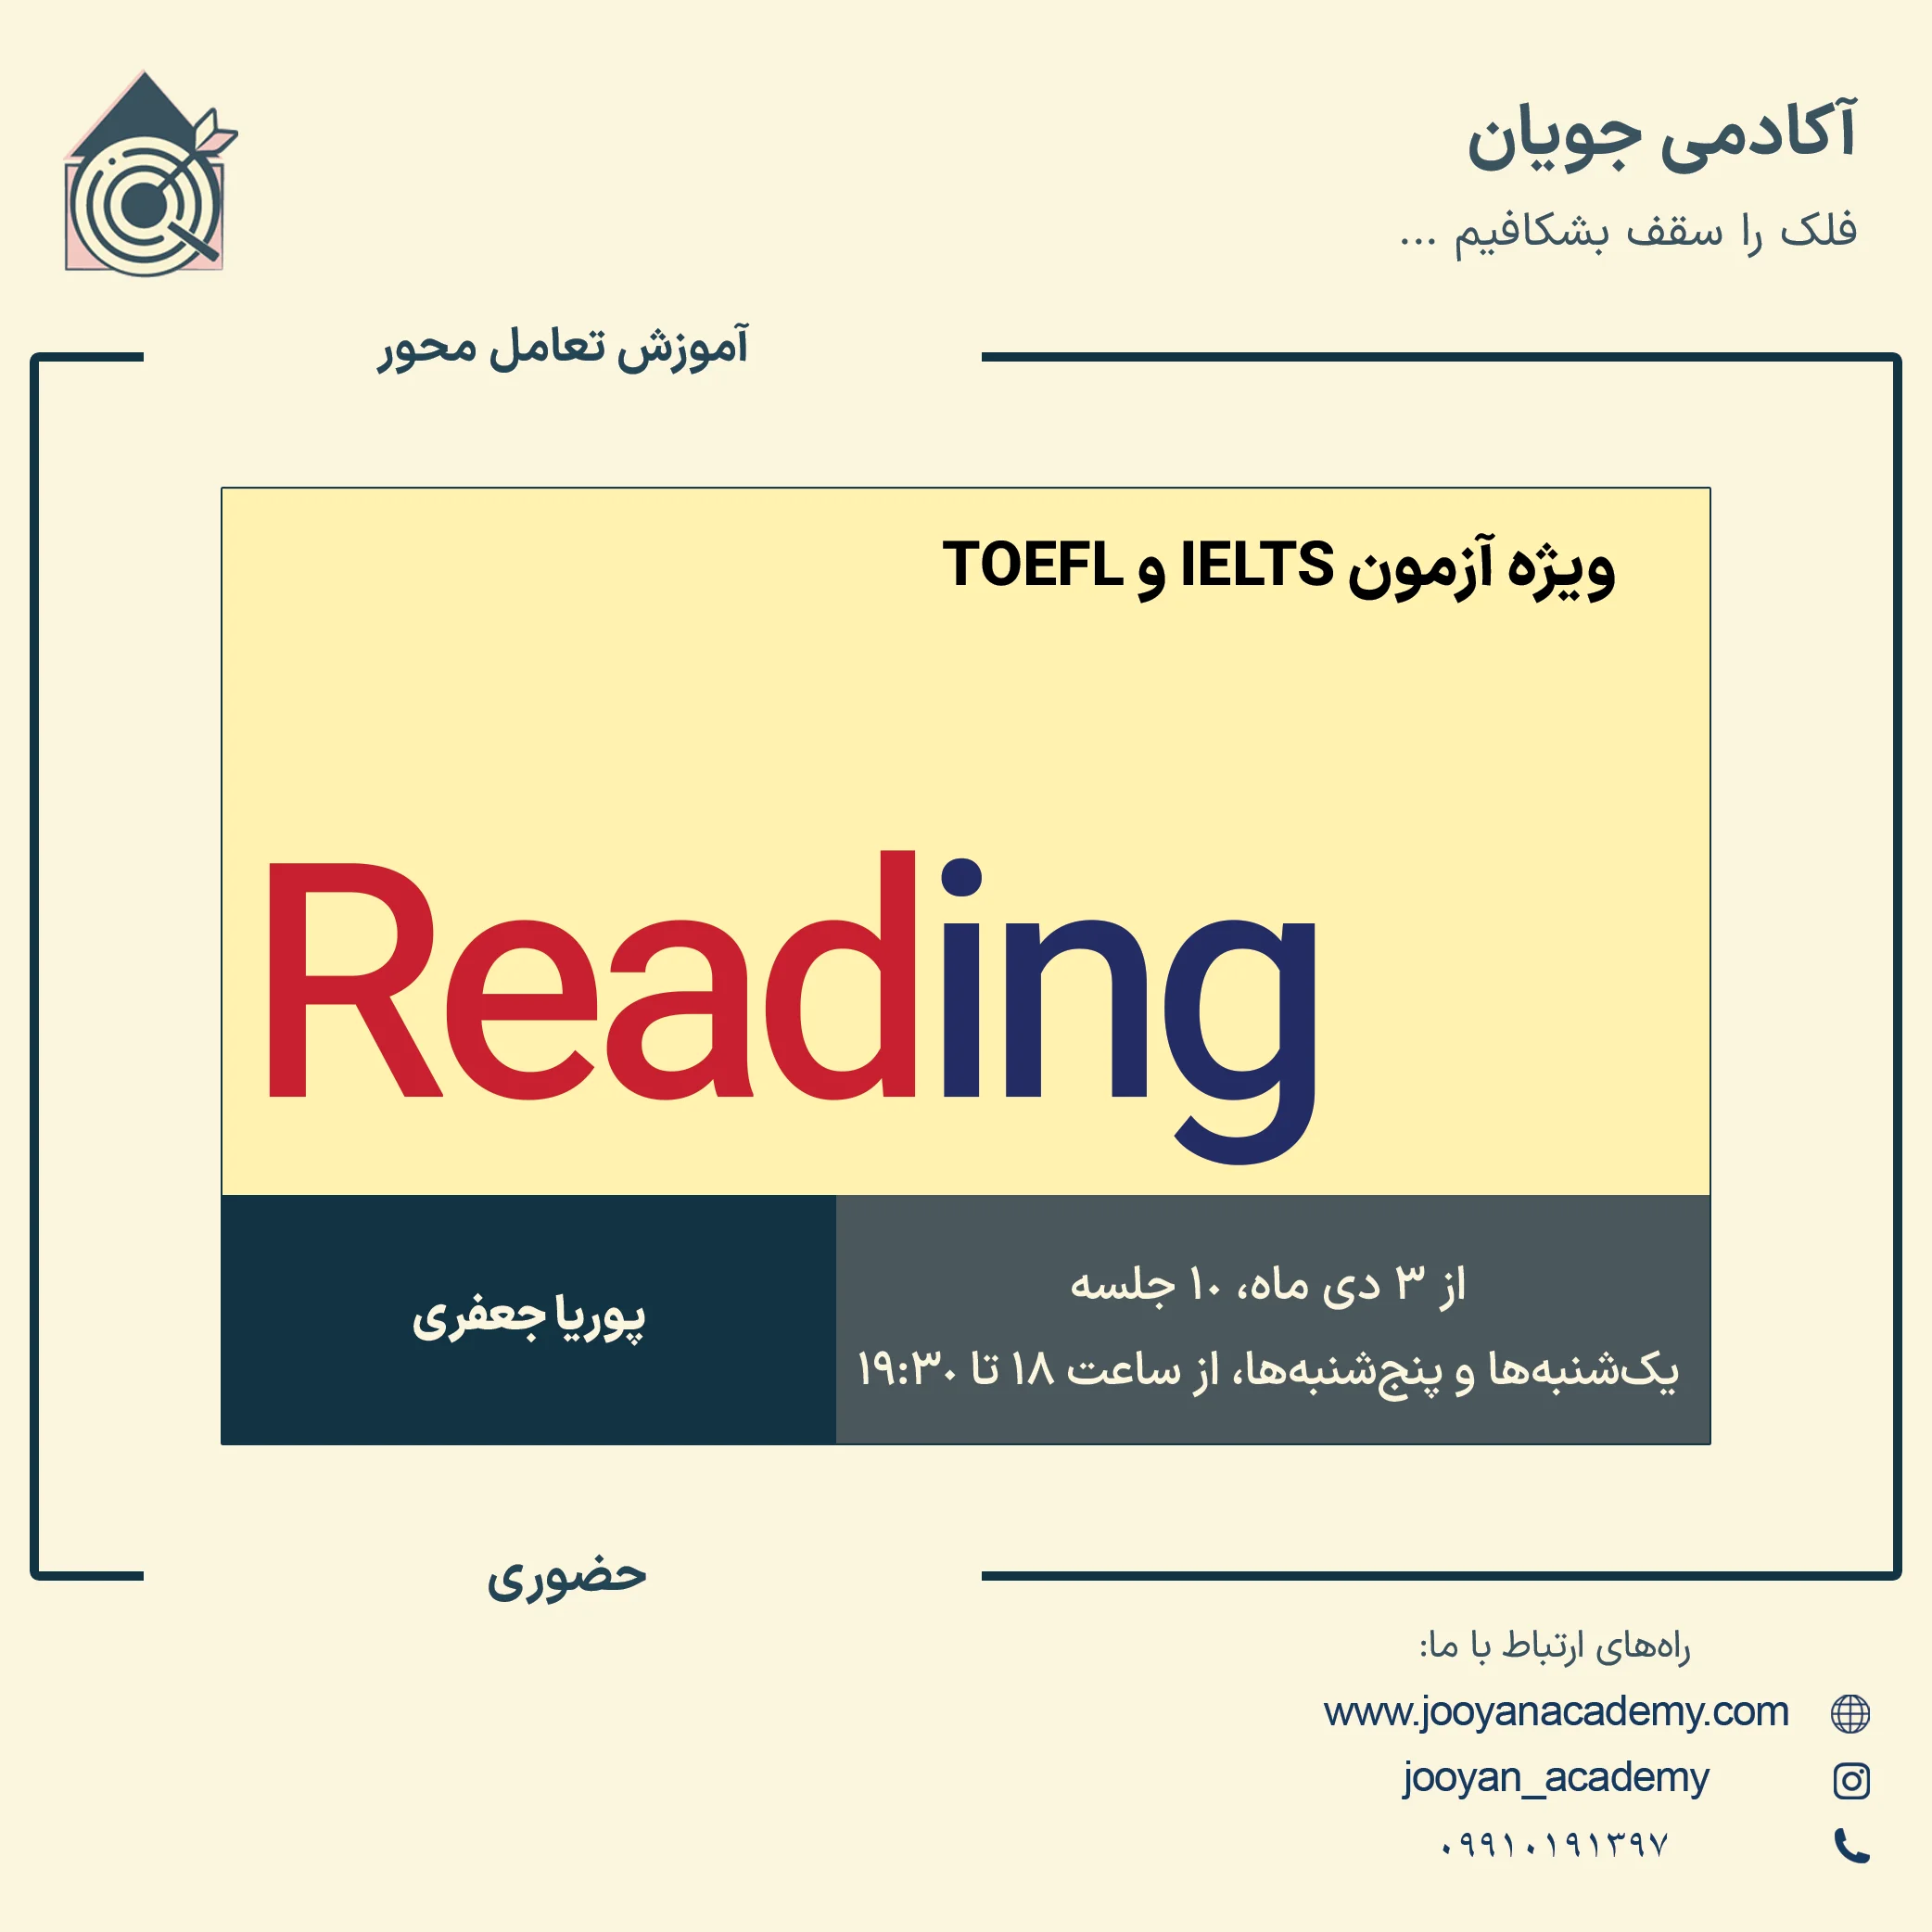 دوره آموزش مهارت Reading ویژه آزمون IELTS و TOEFL